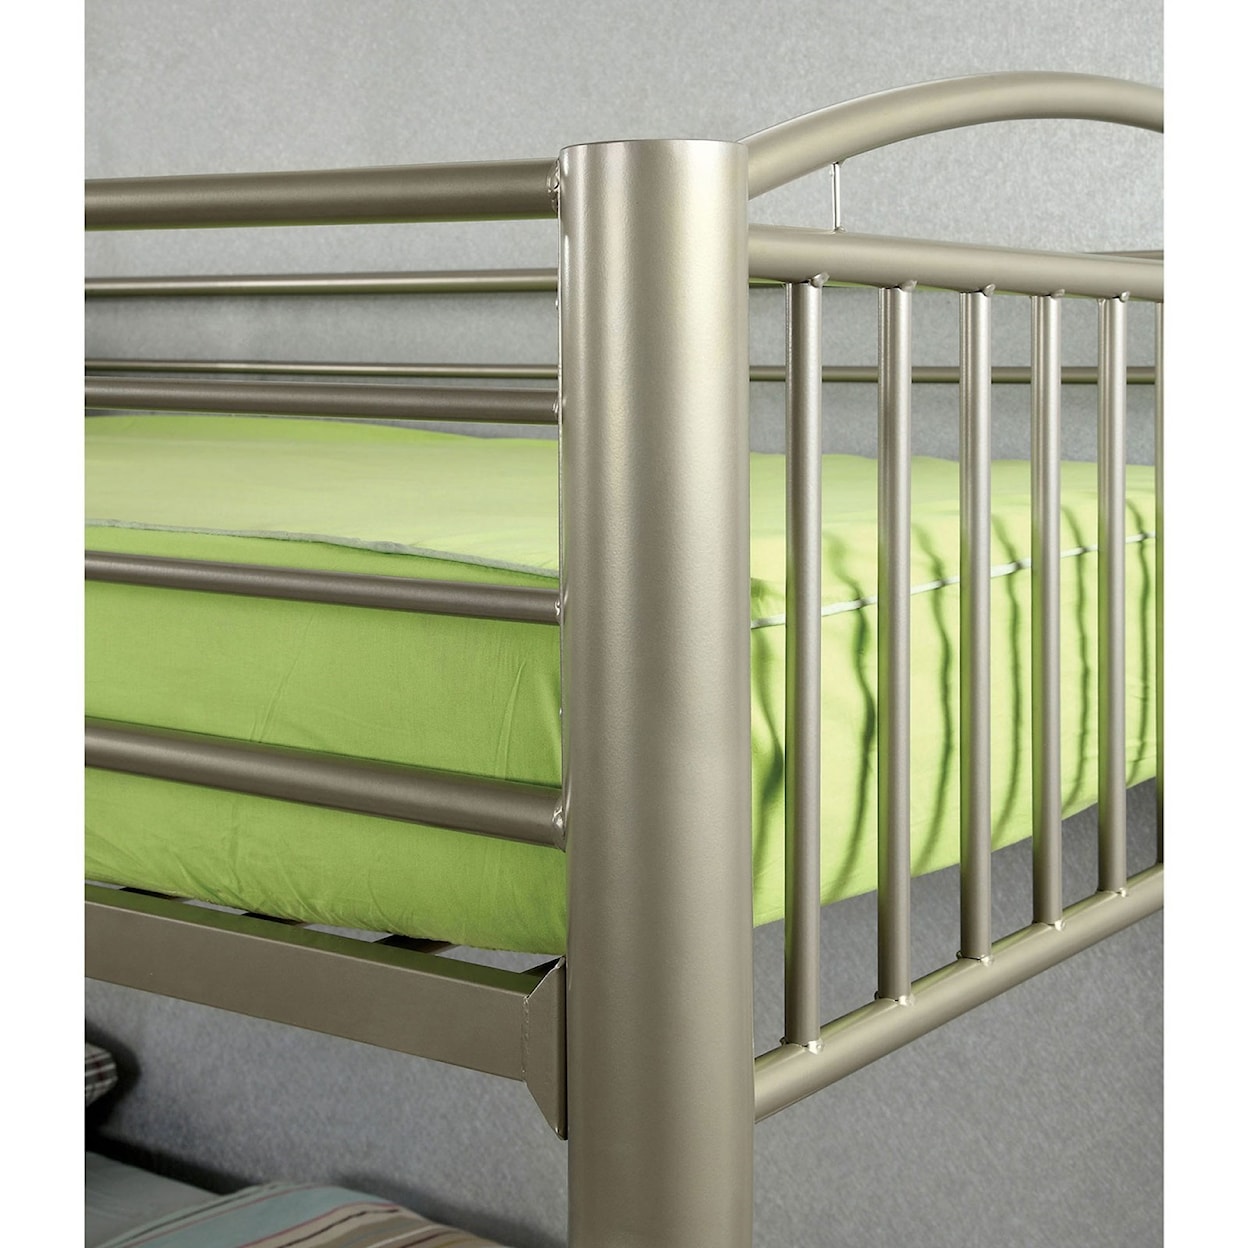 FUSA Lovia Twin/Twin Bunk Bed